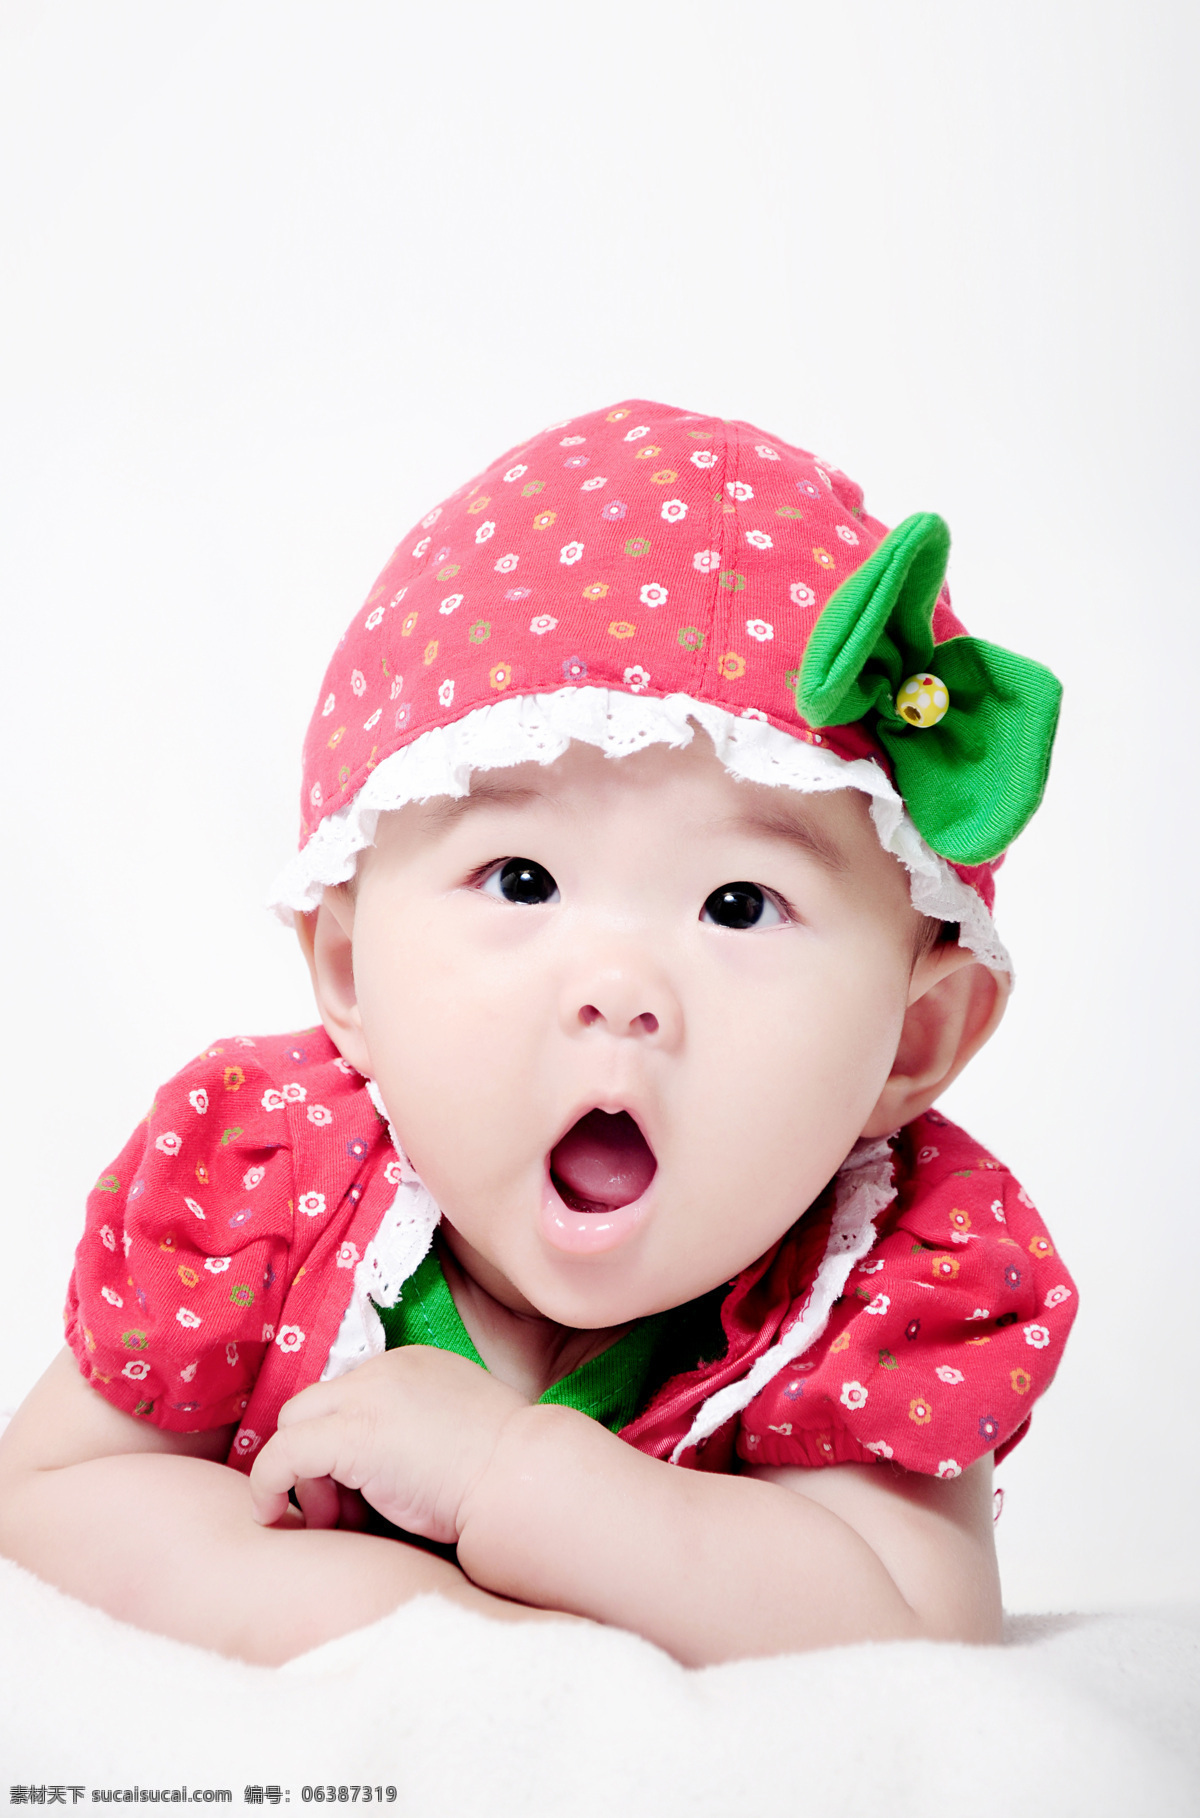 婴儿 宝宝 红色 可爱 孩子 漂亮 趴着 小模特 惊讶 大眼睛 张嘴巴 儿童幼儿 人物图库